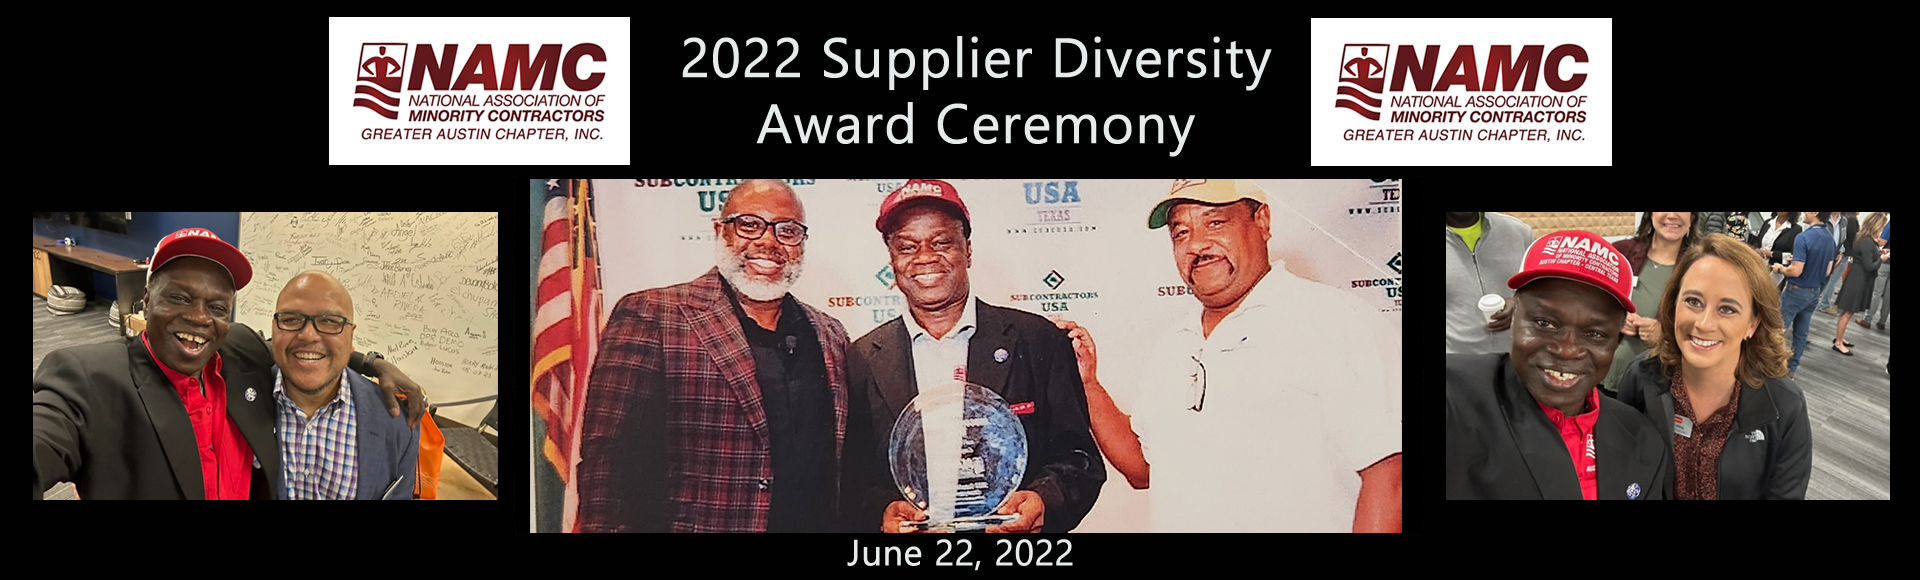 slider_1_namc_supplier_diversity_award2-1920x580 (1)